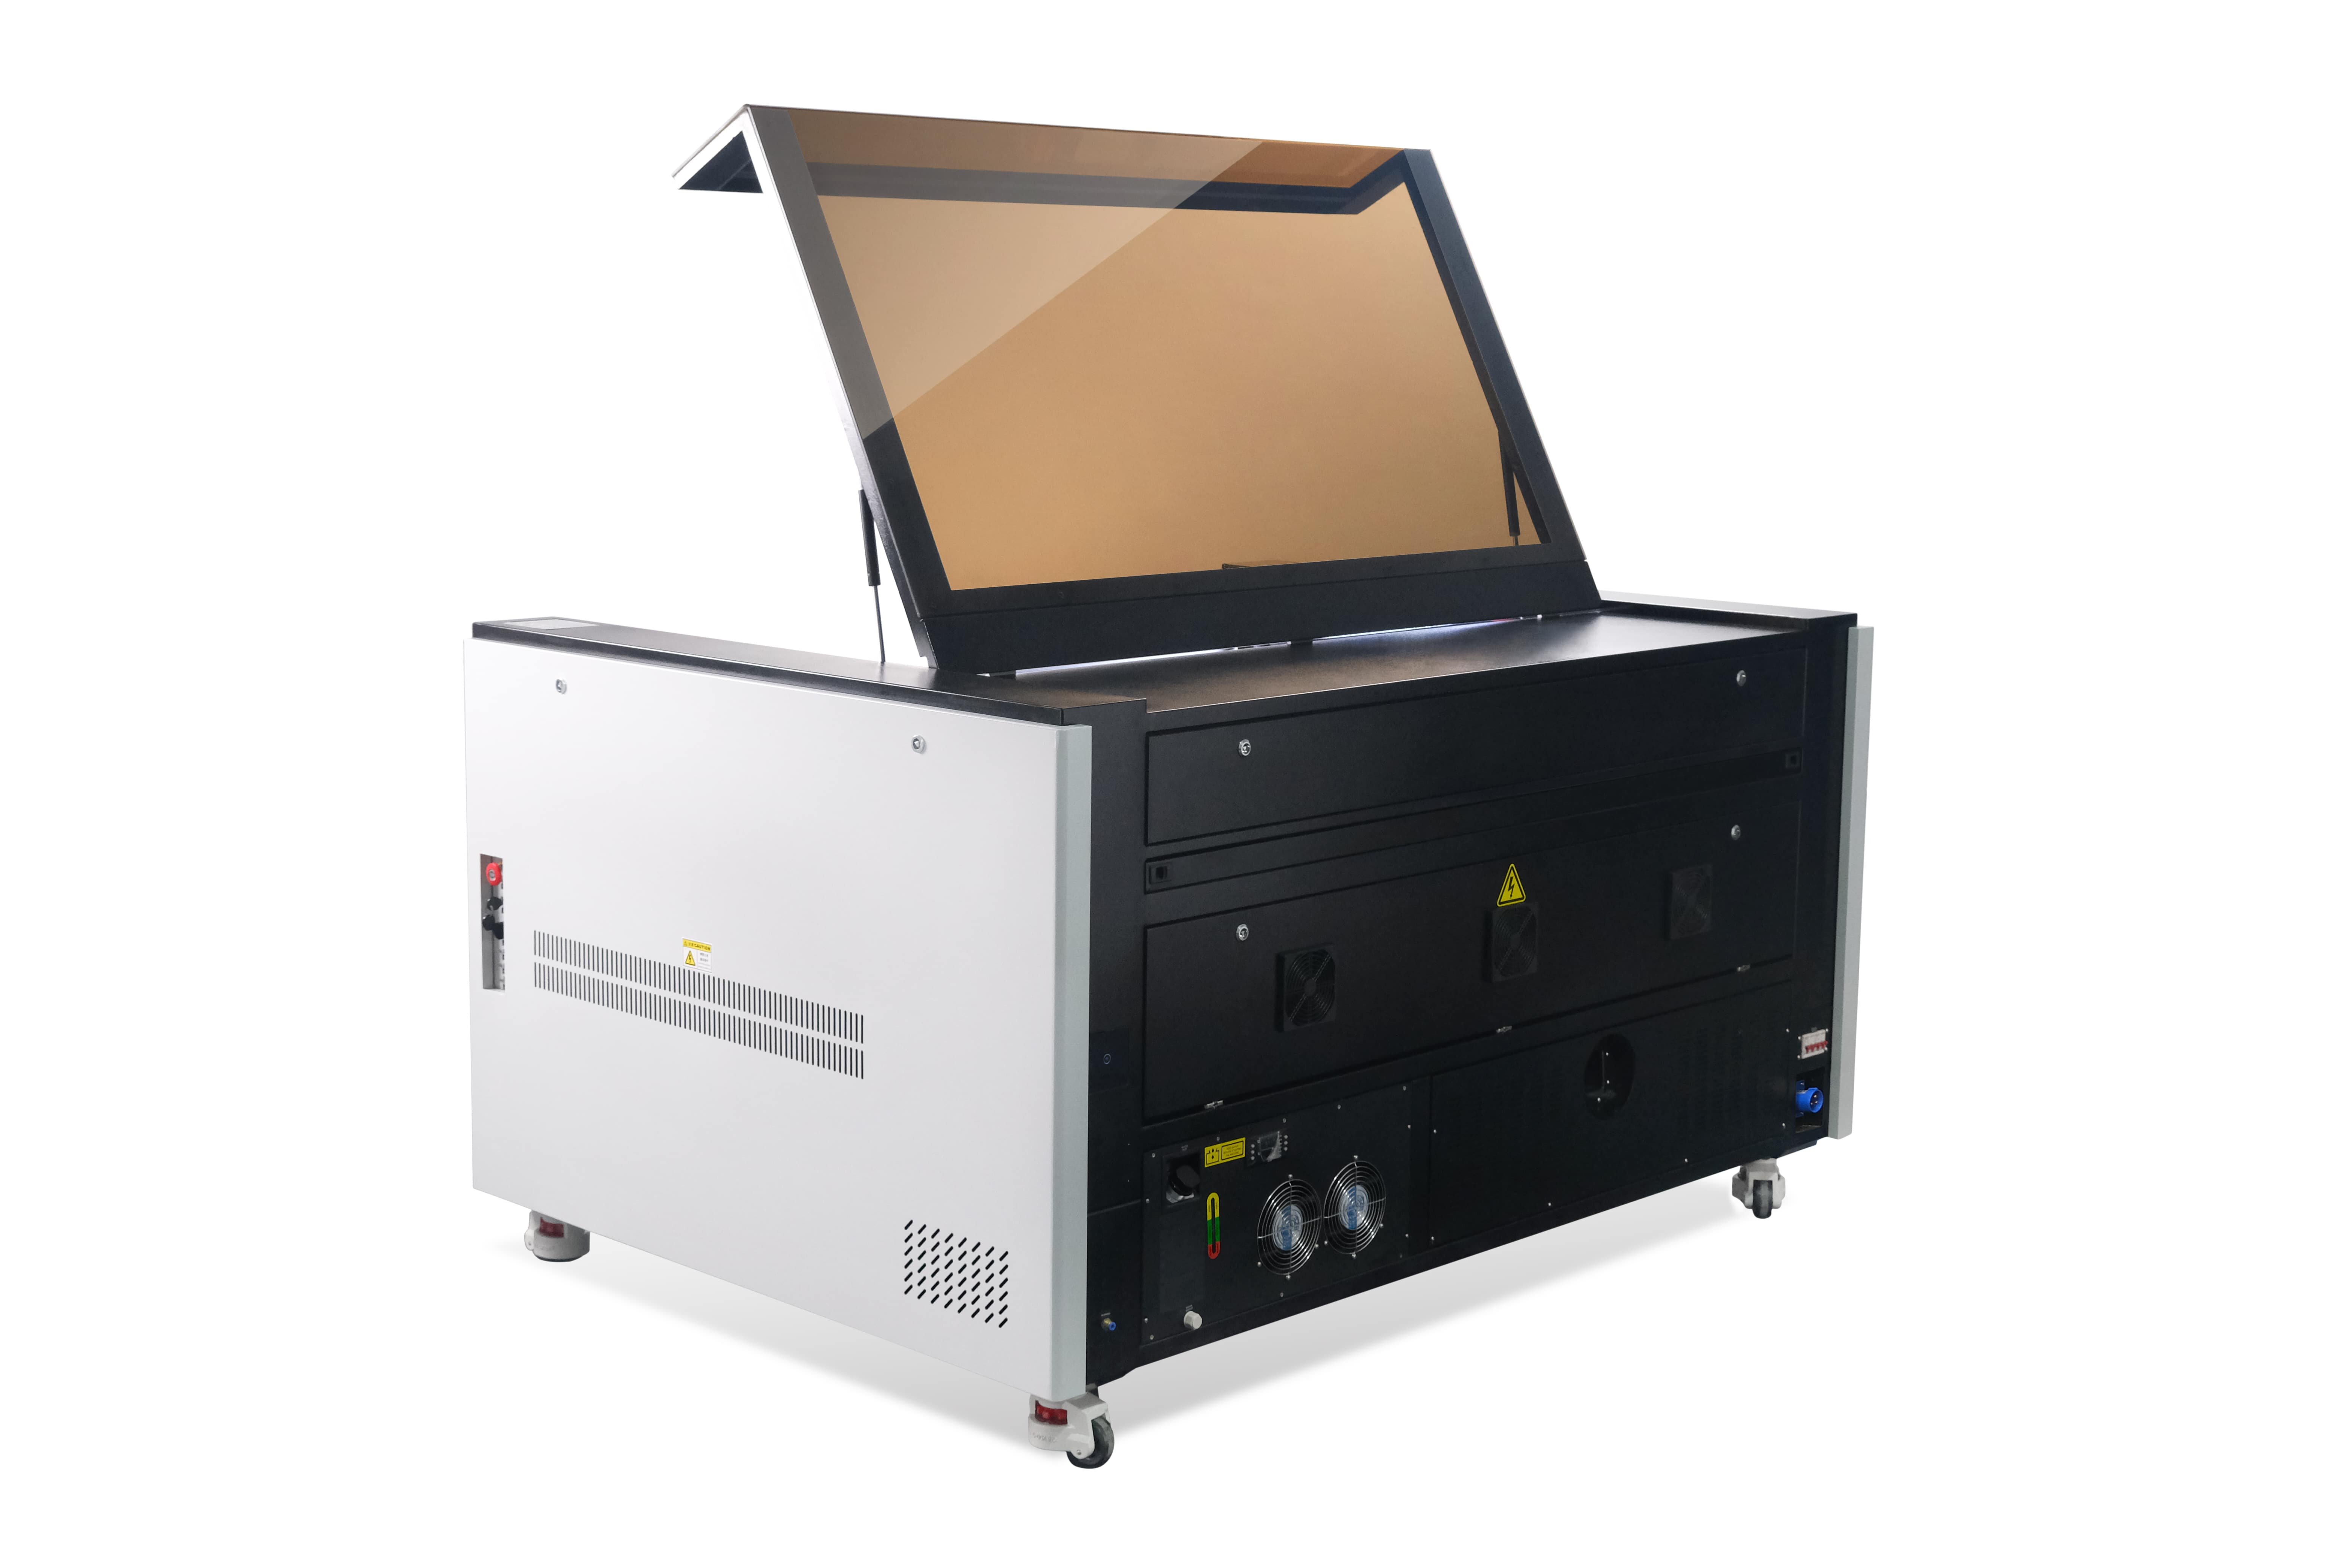 Super NOVA - 2022 Best Laser Engraving Machine from AEON Laser_4